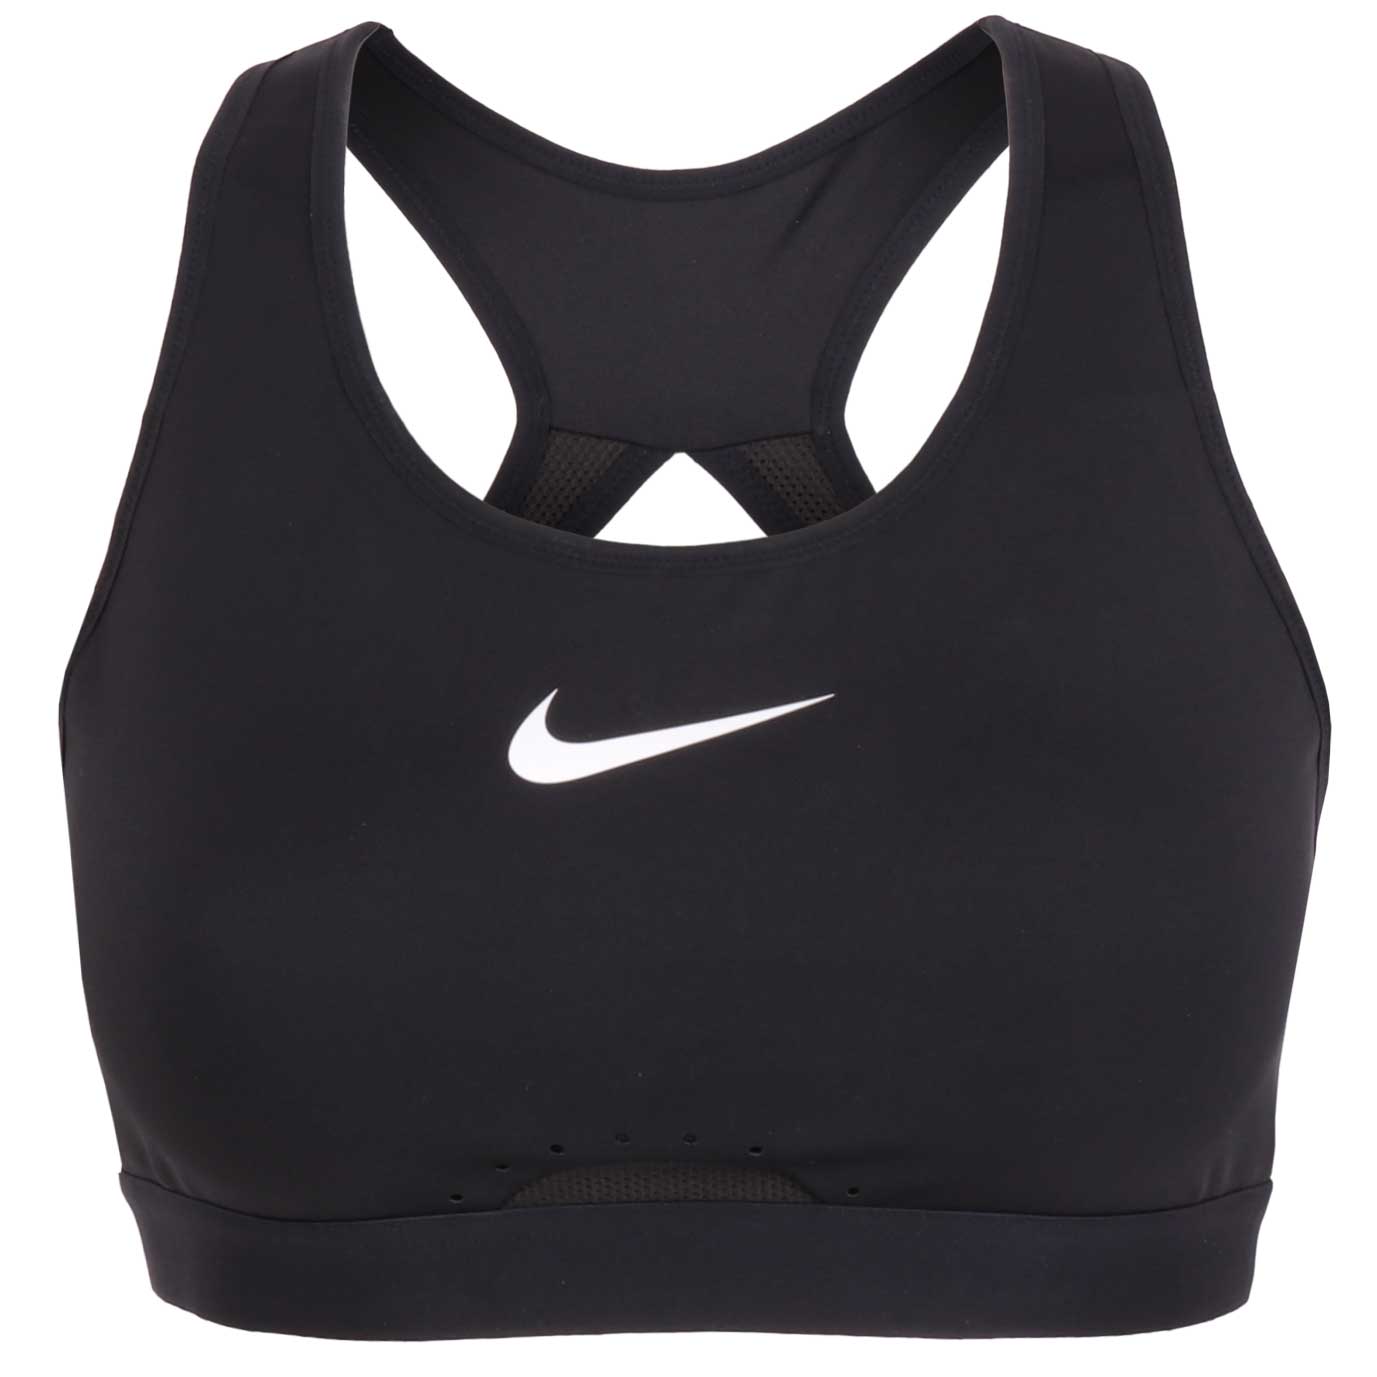 Produktbild von Nike Dri-FIT Swoosh Sport-BH mit starkem Halt Damen - Körbchengröße A - schwarz/schwarz/dark smoke grey/weiss DD0428-010